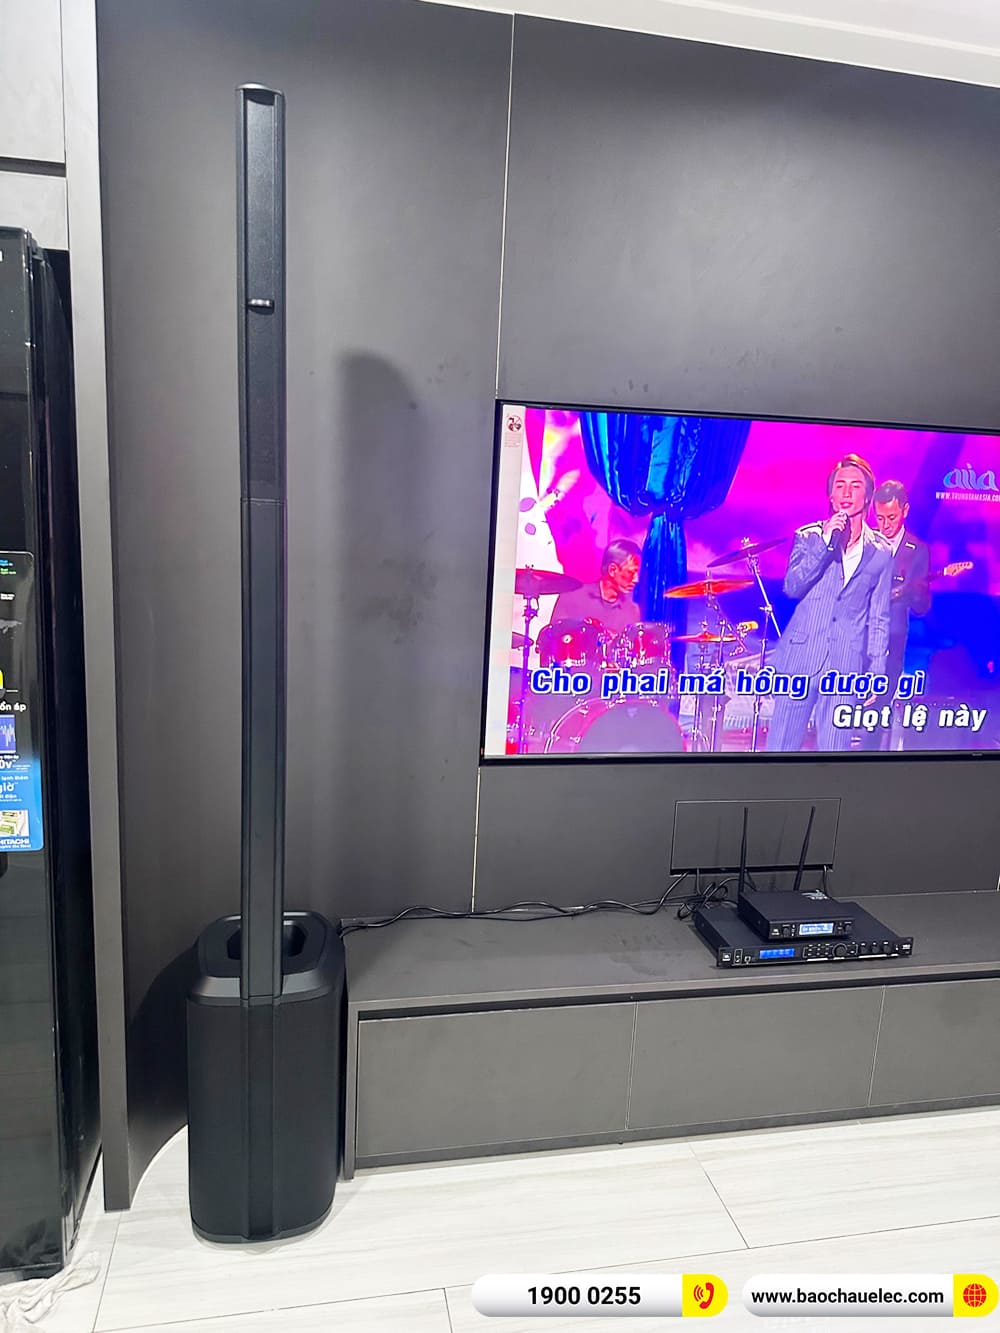 Lắp đặt dàn karaoke di động Bose gần 51tr cho cô Hòa ở TPHCM